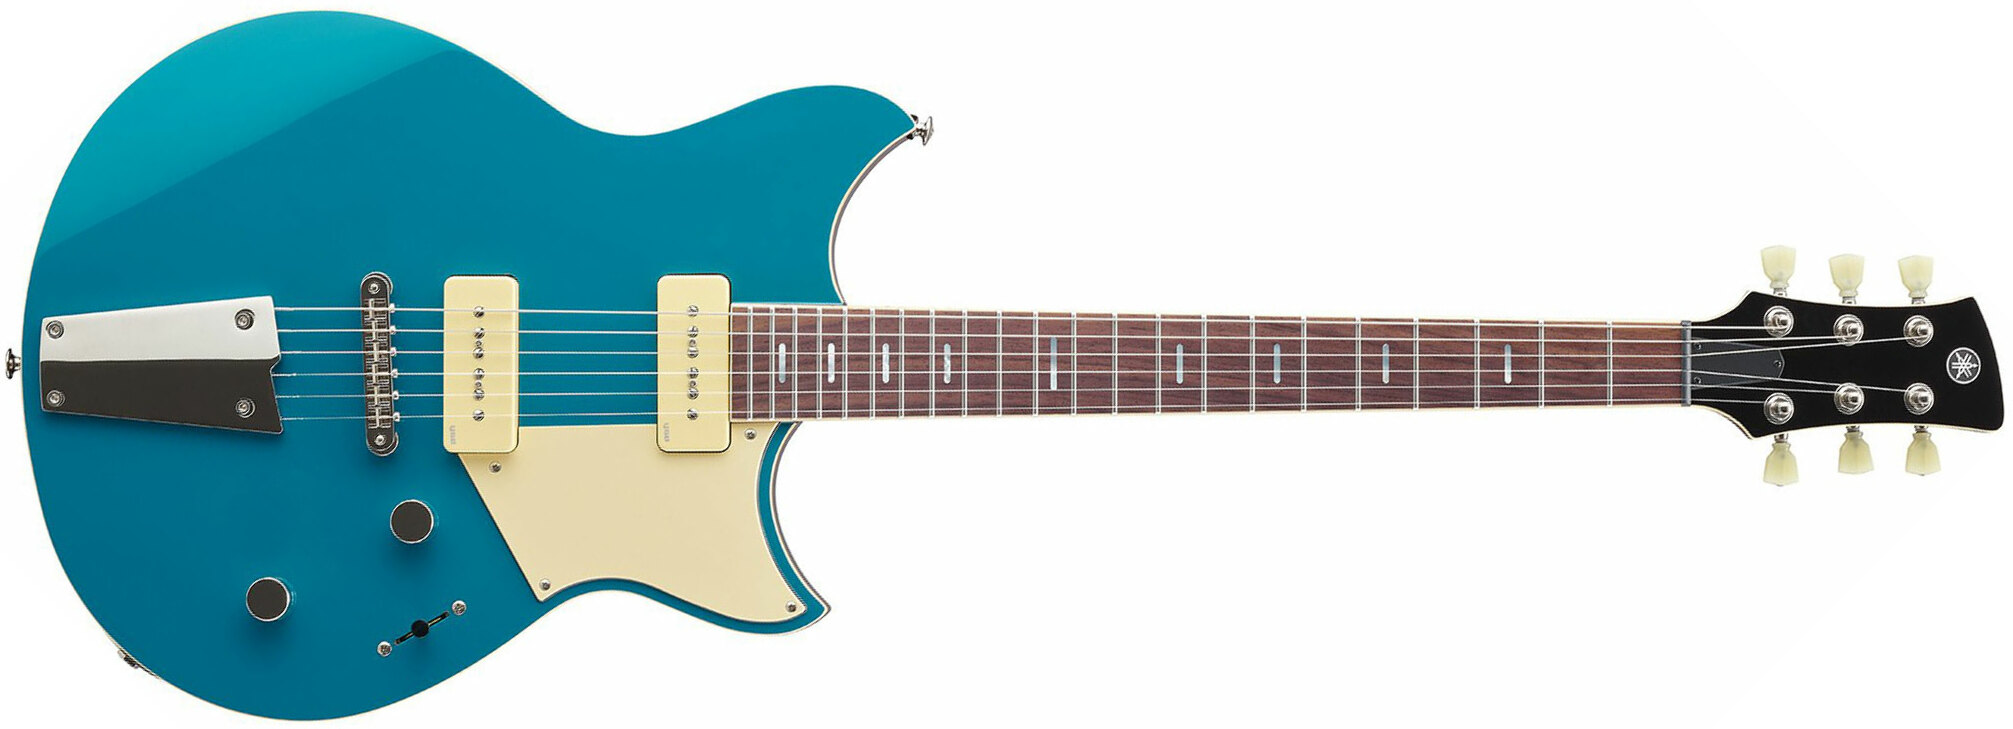 Yamaha Rss02t Revstar Standard 2p90 Ht Rw - Swift Blue - Guitarra eléctrica de doble corte. - Main picture